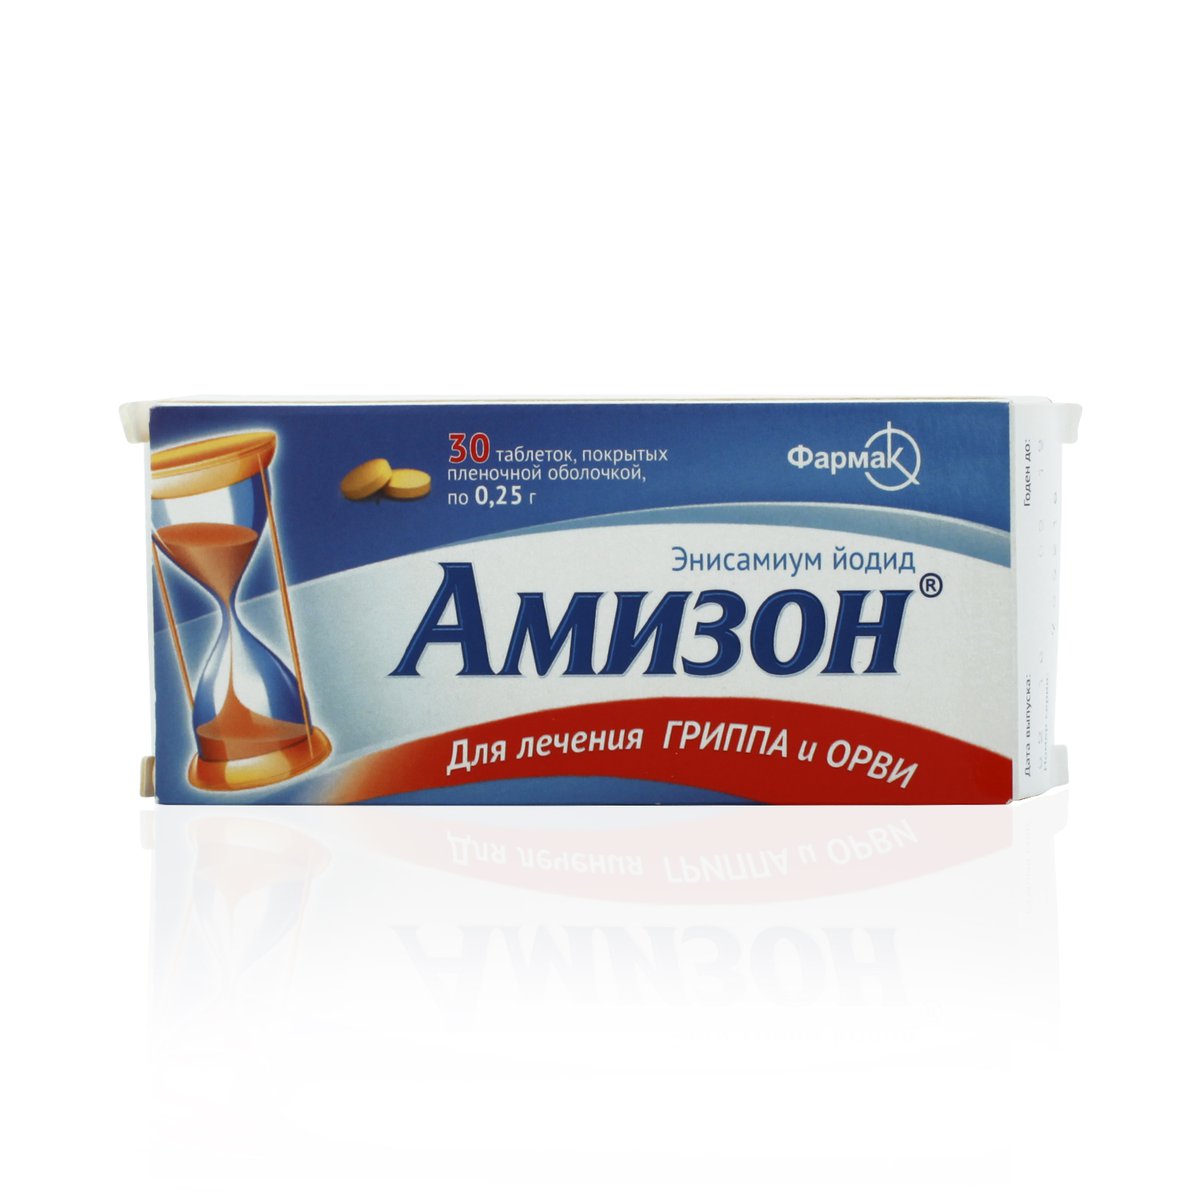 Амизон (таблетки, 30 шт, 250 мг) - цена,  онлайн  .